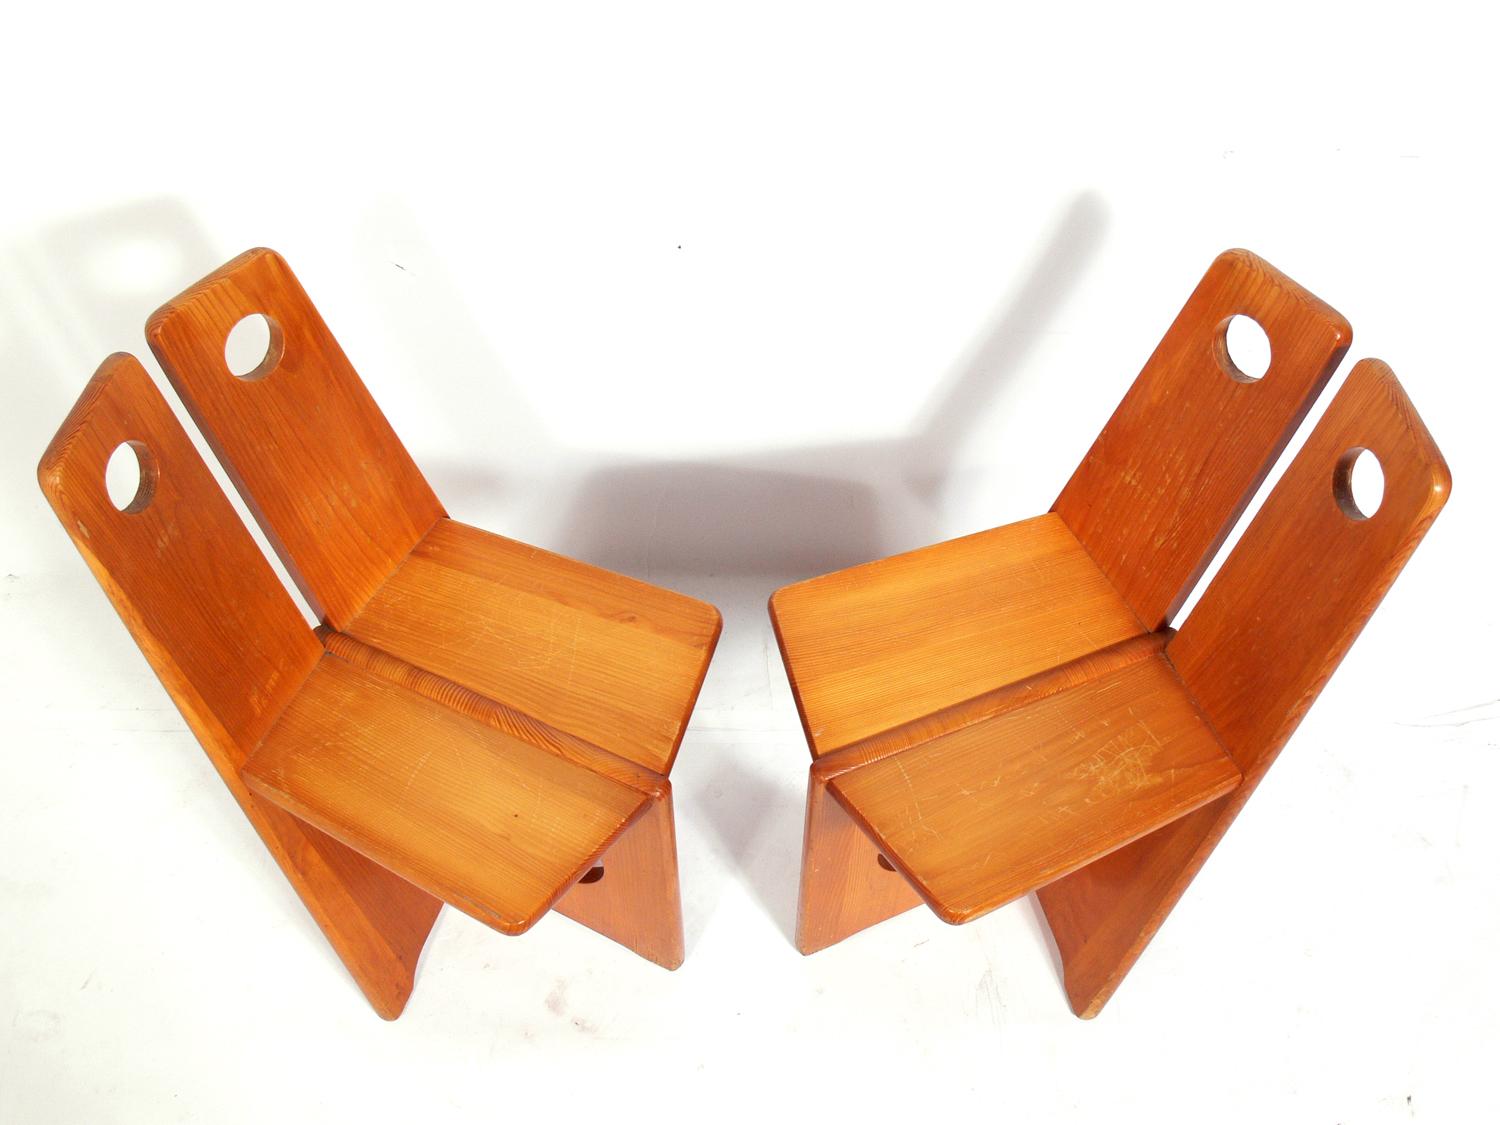 Pair of Low Slung German Constructivist Chairs (Deutsch)